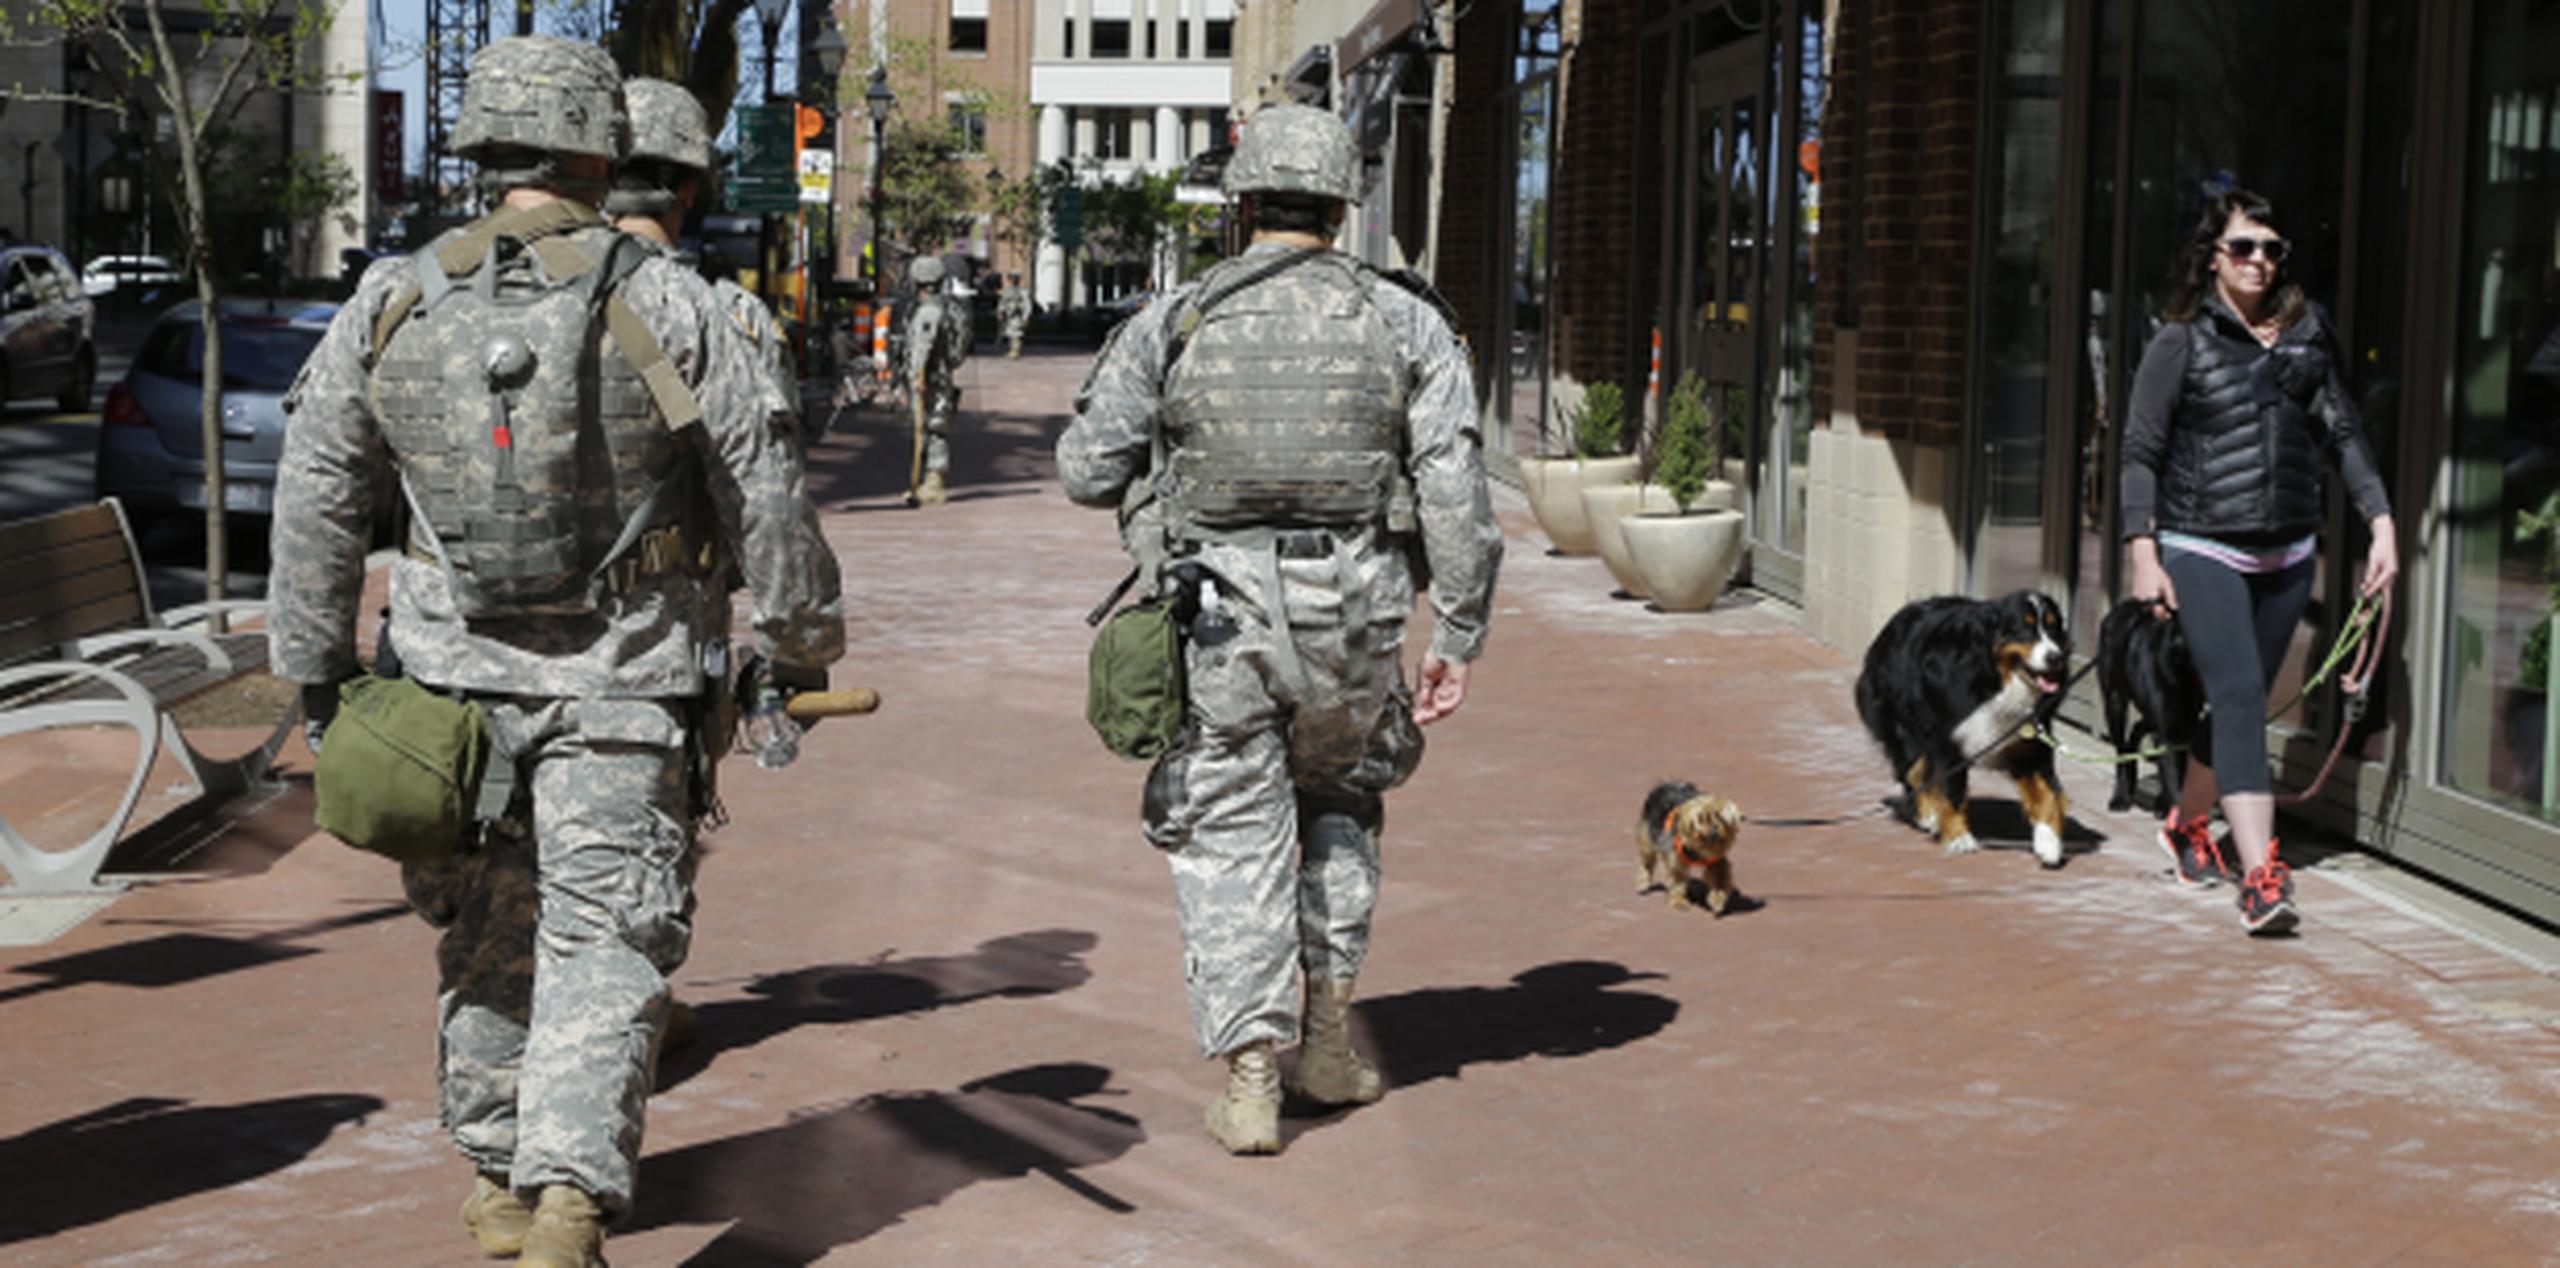 El patrullaje de la Guardia Nacional por las calles de Baltimore no impide a esta residente sacar a pasear a sus perros. (AP)